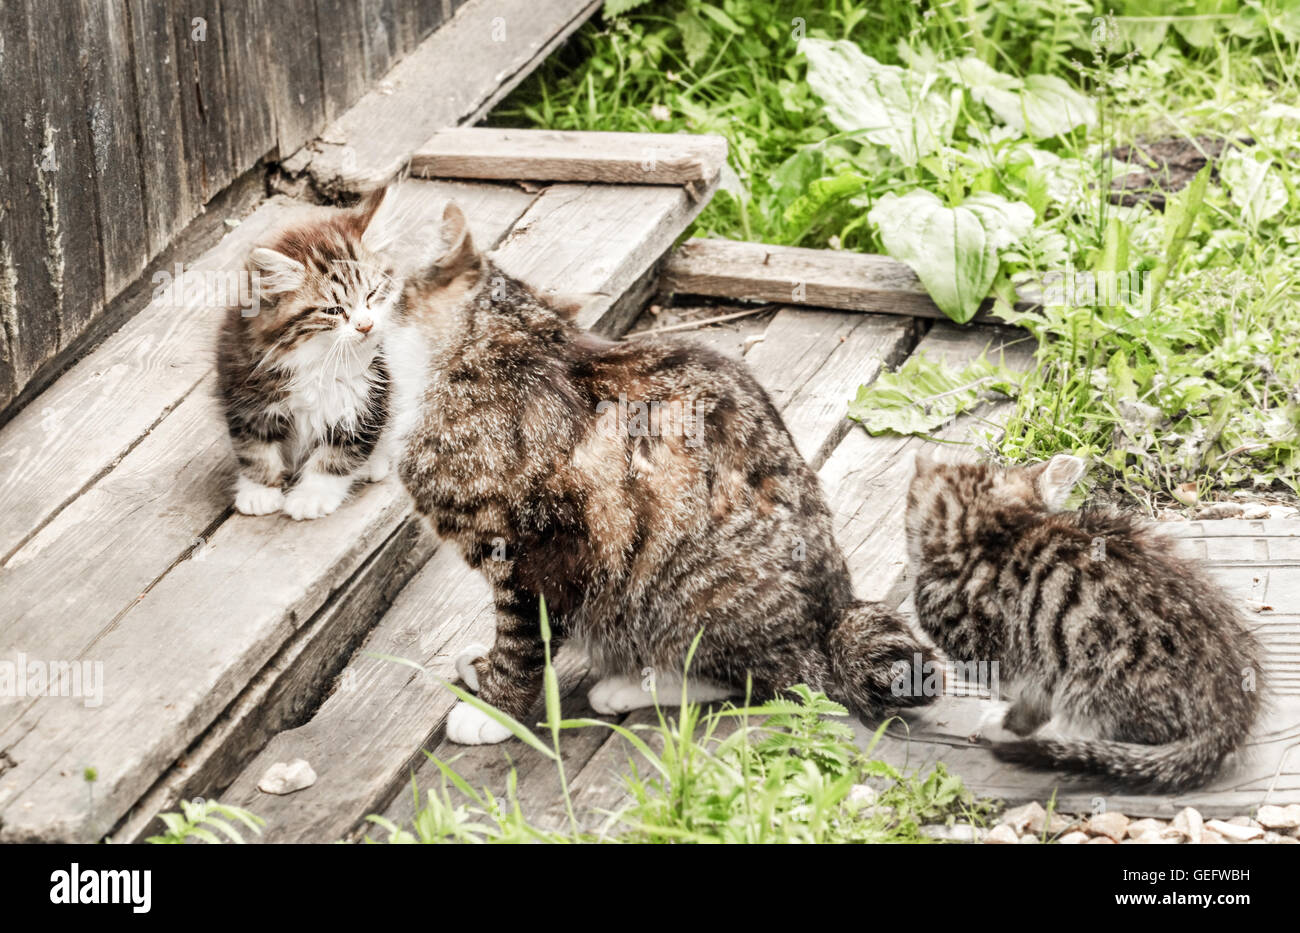 Familia de gatos: mamá gata con gatitos en jardín de verano Foto de stock